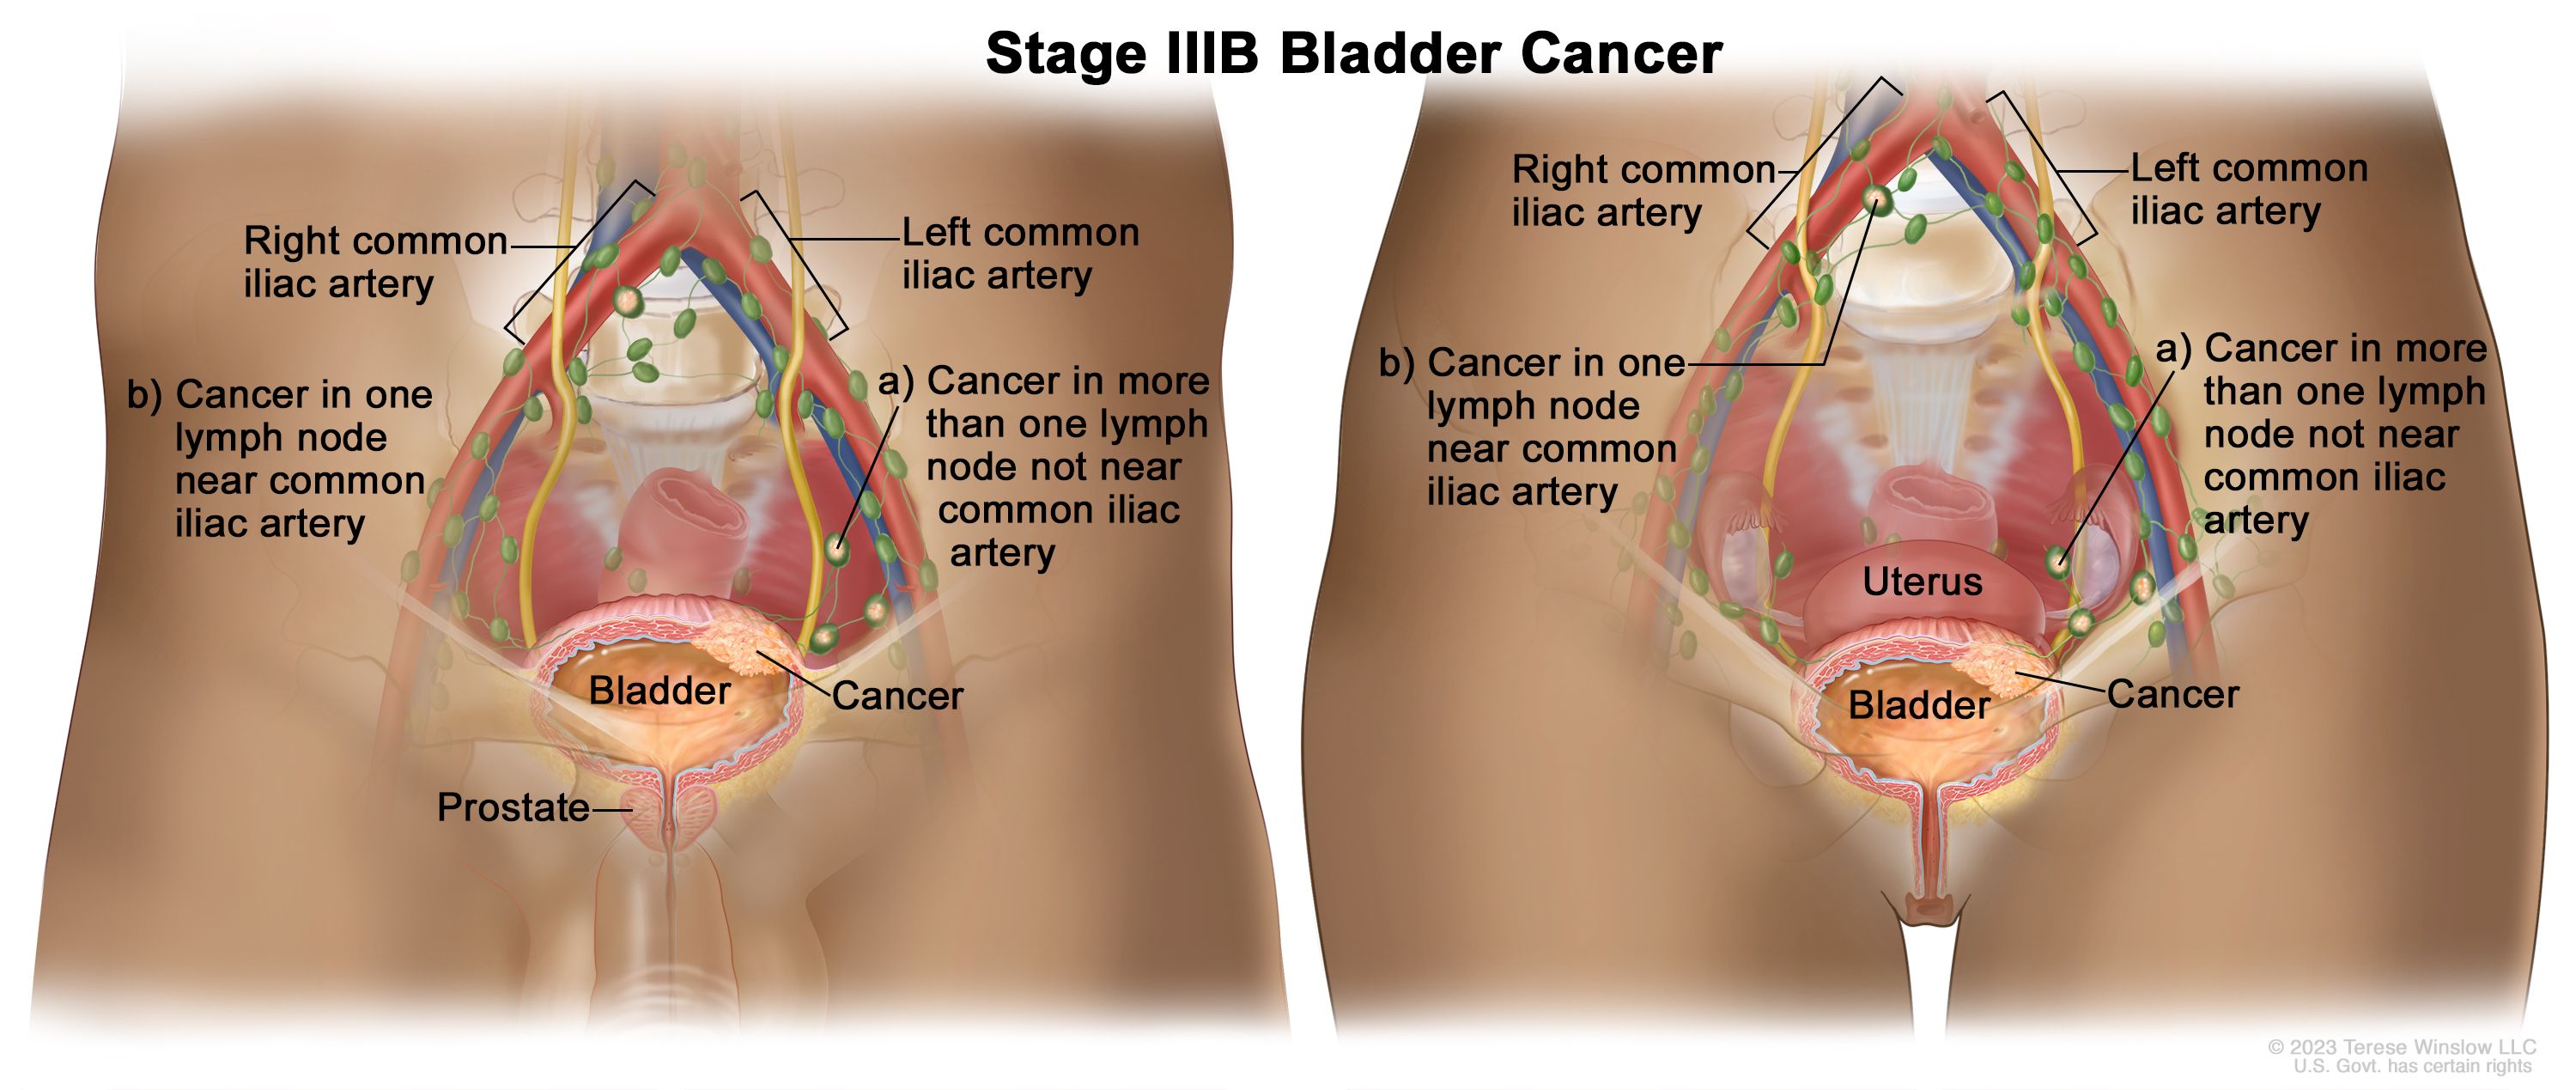 มะเร็งกระเพาะปัสสาวะระยะ IIIB